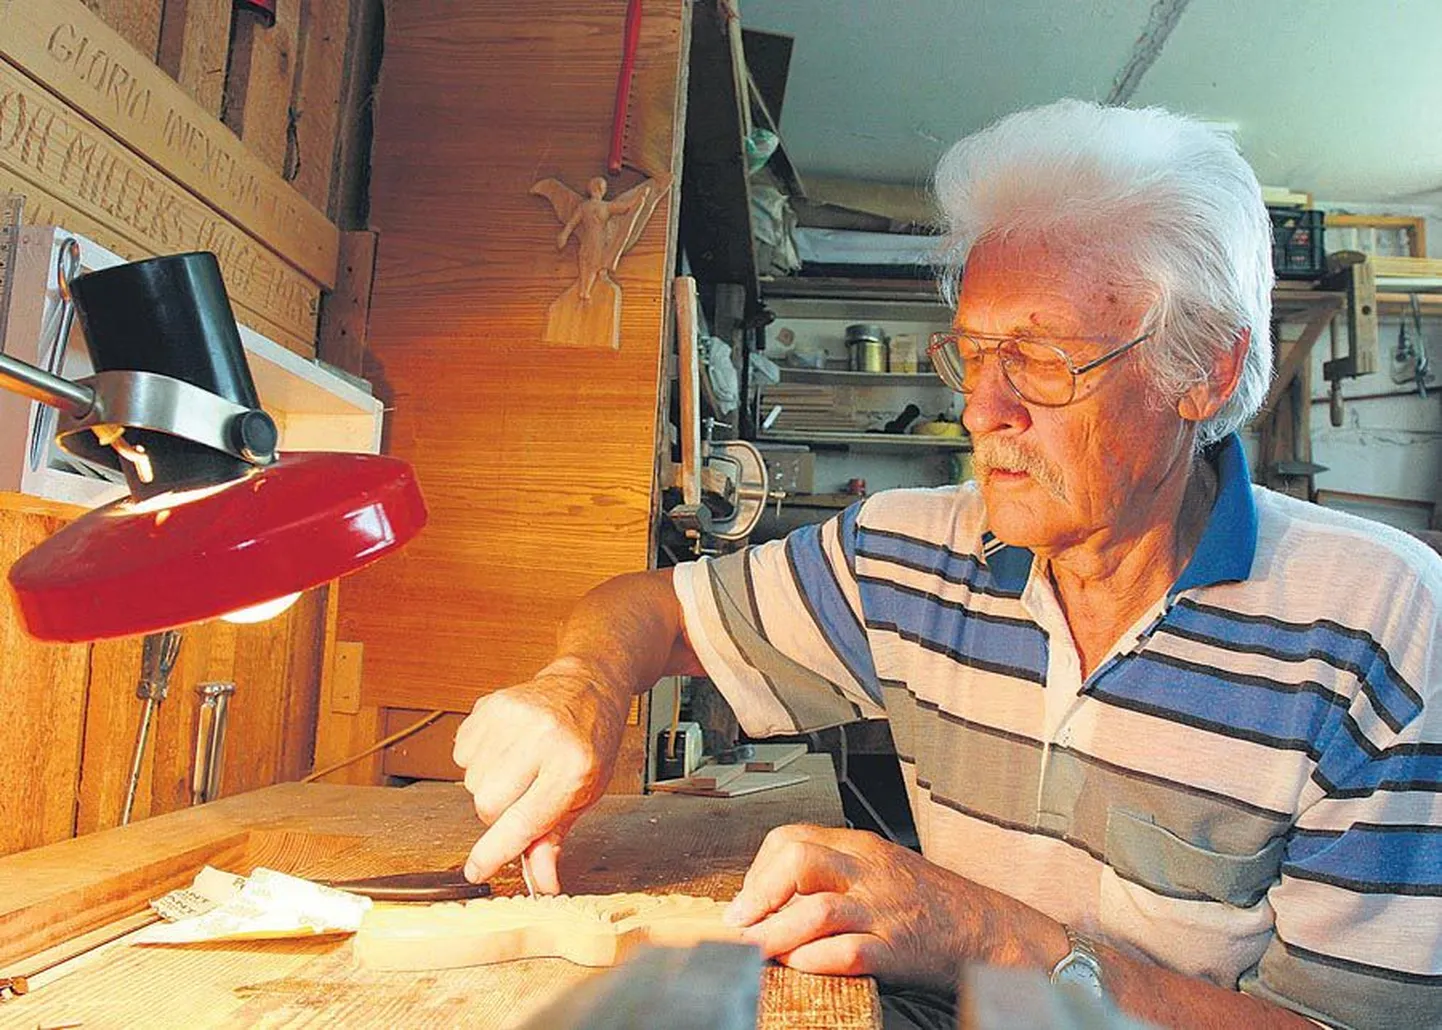 Terav skalpell ja tükike kaselauda ning kõrval ka liivapaber — Aivo Kirsil valmib keldrisse kohandatud töölaual järjekordne taies.